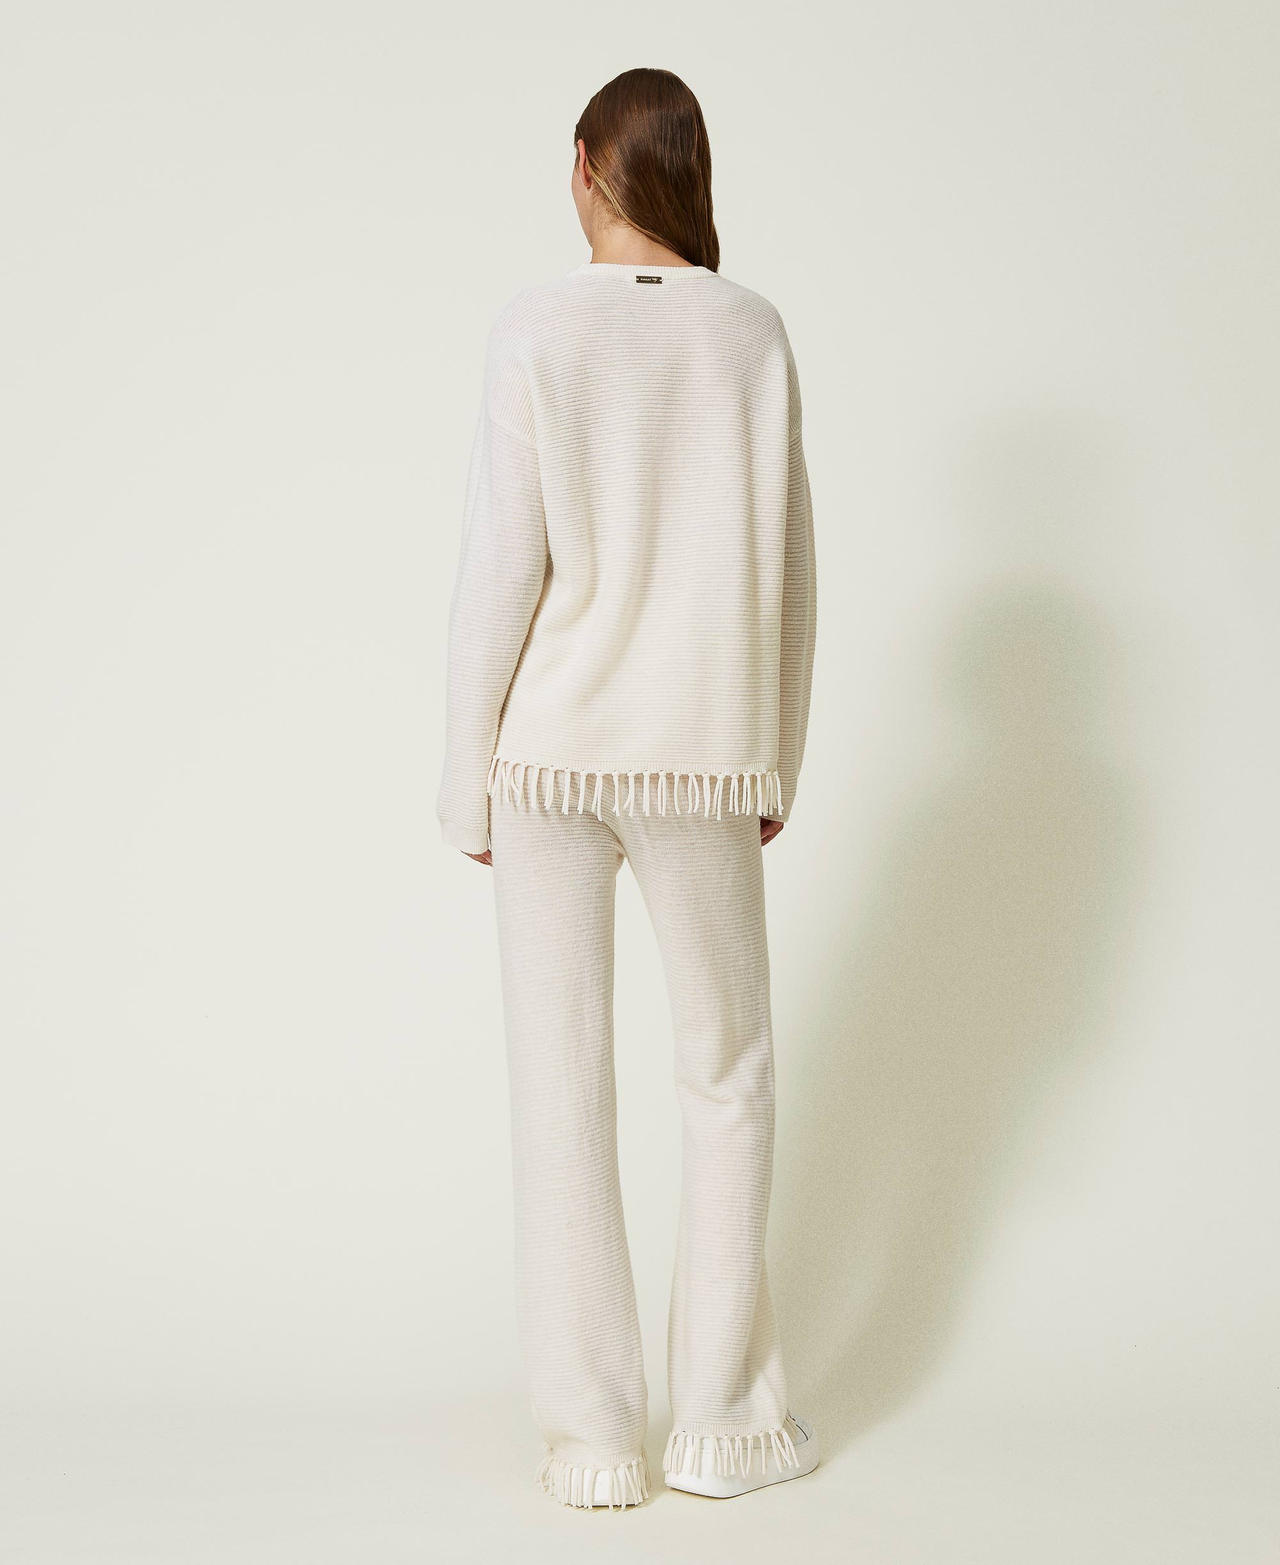 Pantalon en laine avec franges Nacre Femme 232LL3ECC-03